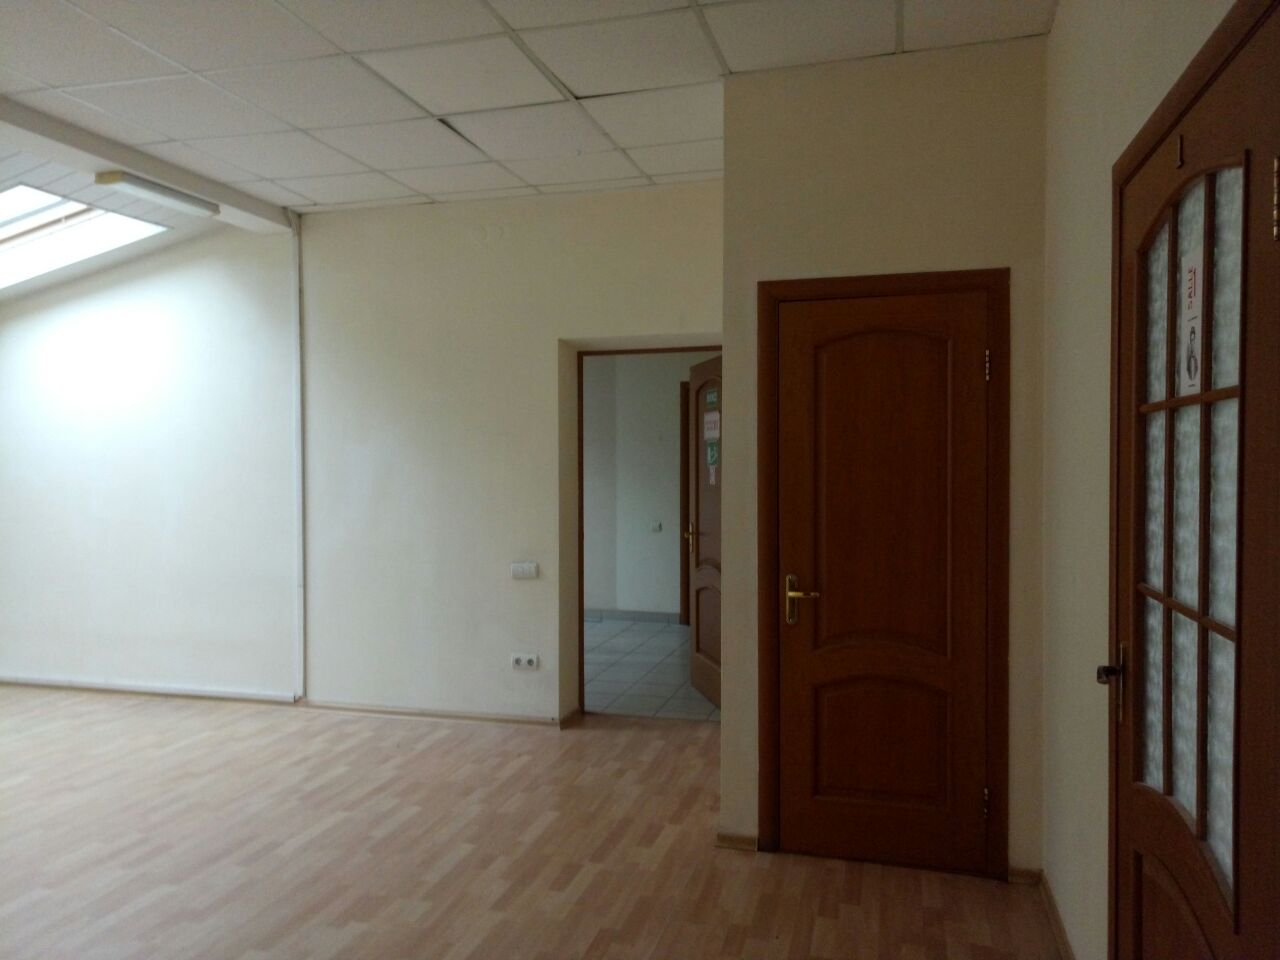 Аренда офиса в Центре Одессы. Общая площадь 257 кв.м, 7 кабинетов. ID 52195 (Фото 1)